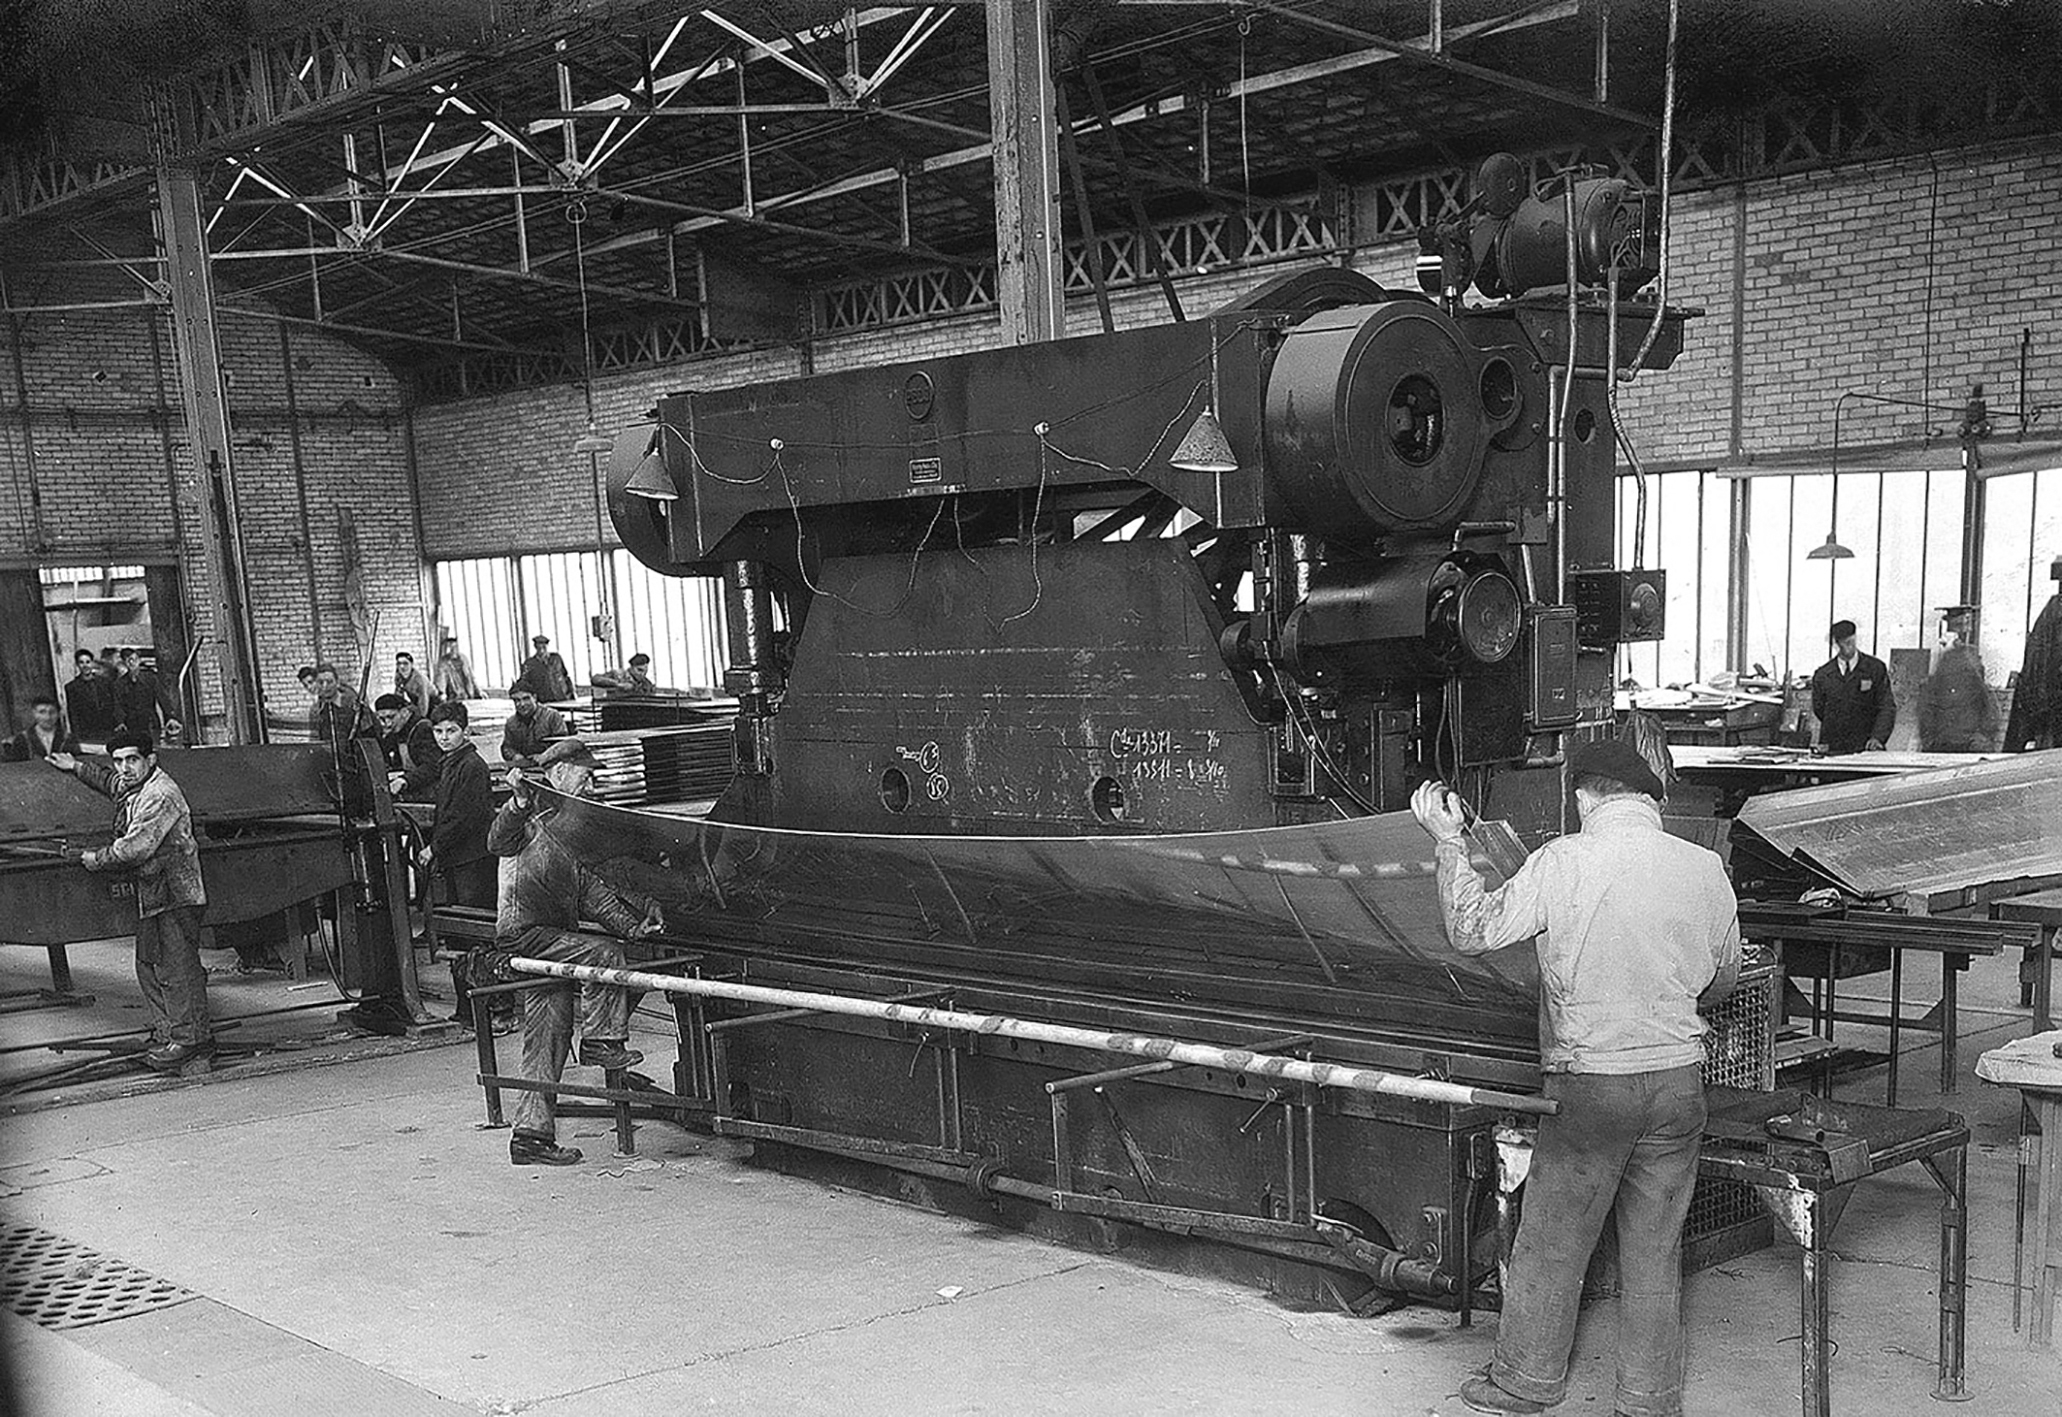 Ateliers Jean Prouvé, Maxéville, c. 1950. The bending press.